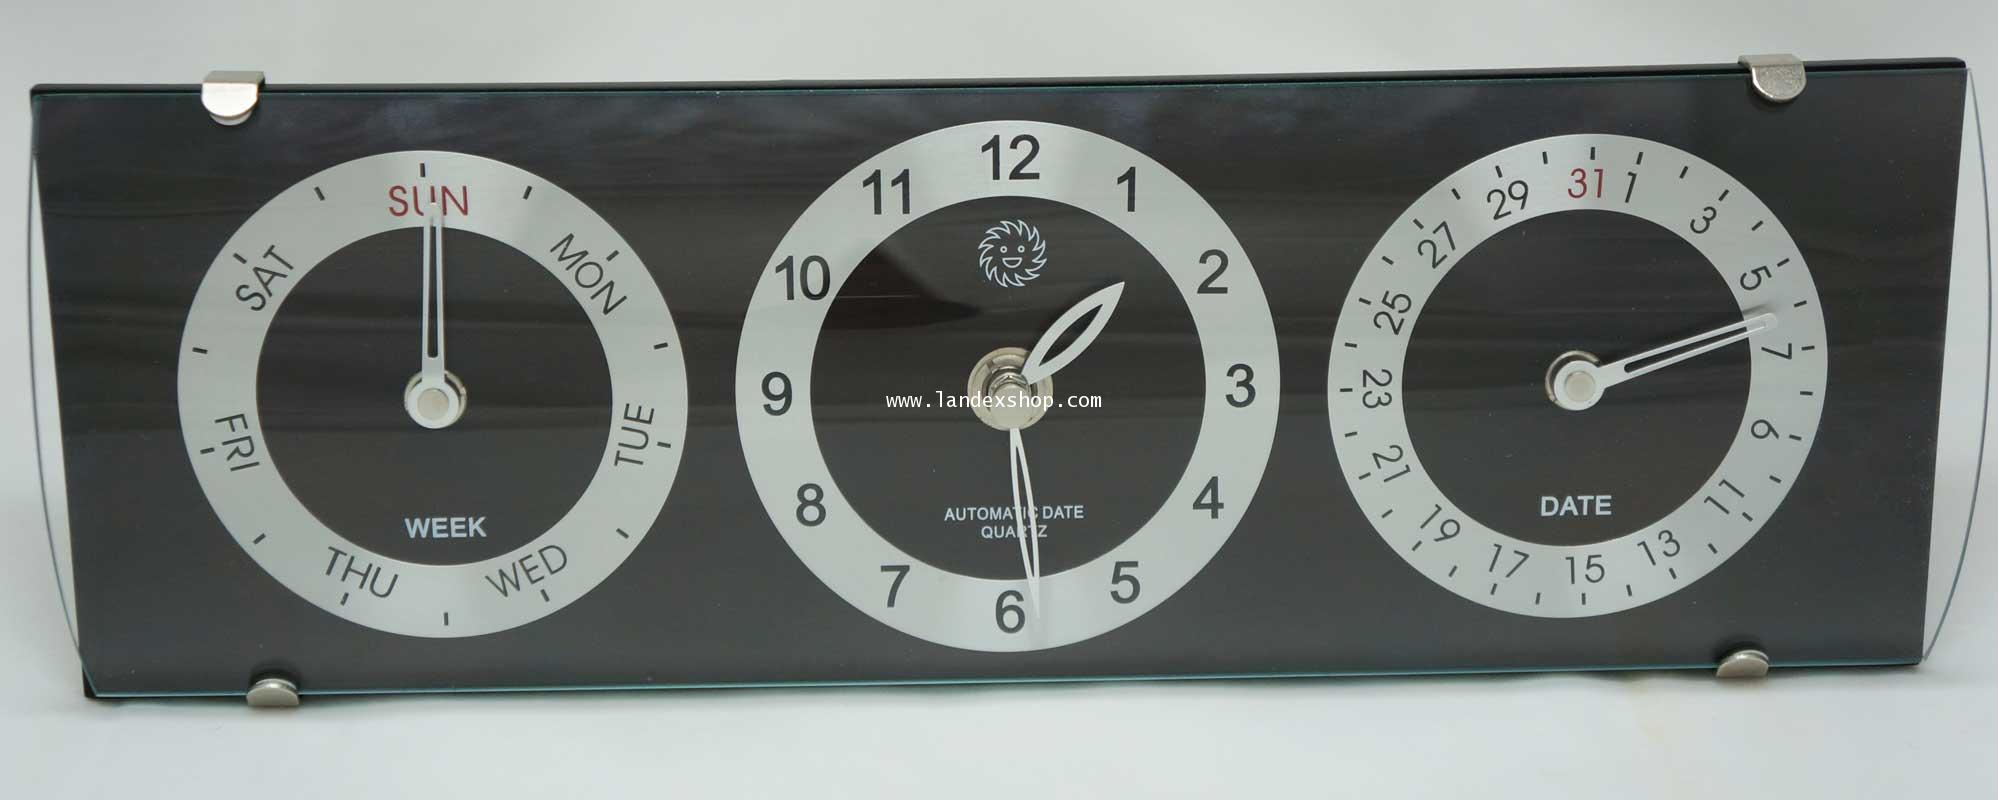 YT230-1  นาฬิกาตั้งโต๊ะ ขนาด 30*10*4.5 ซม. หร้อม หน้าจอวันที่ทำงาน อัตโนมัติ 1